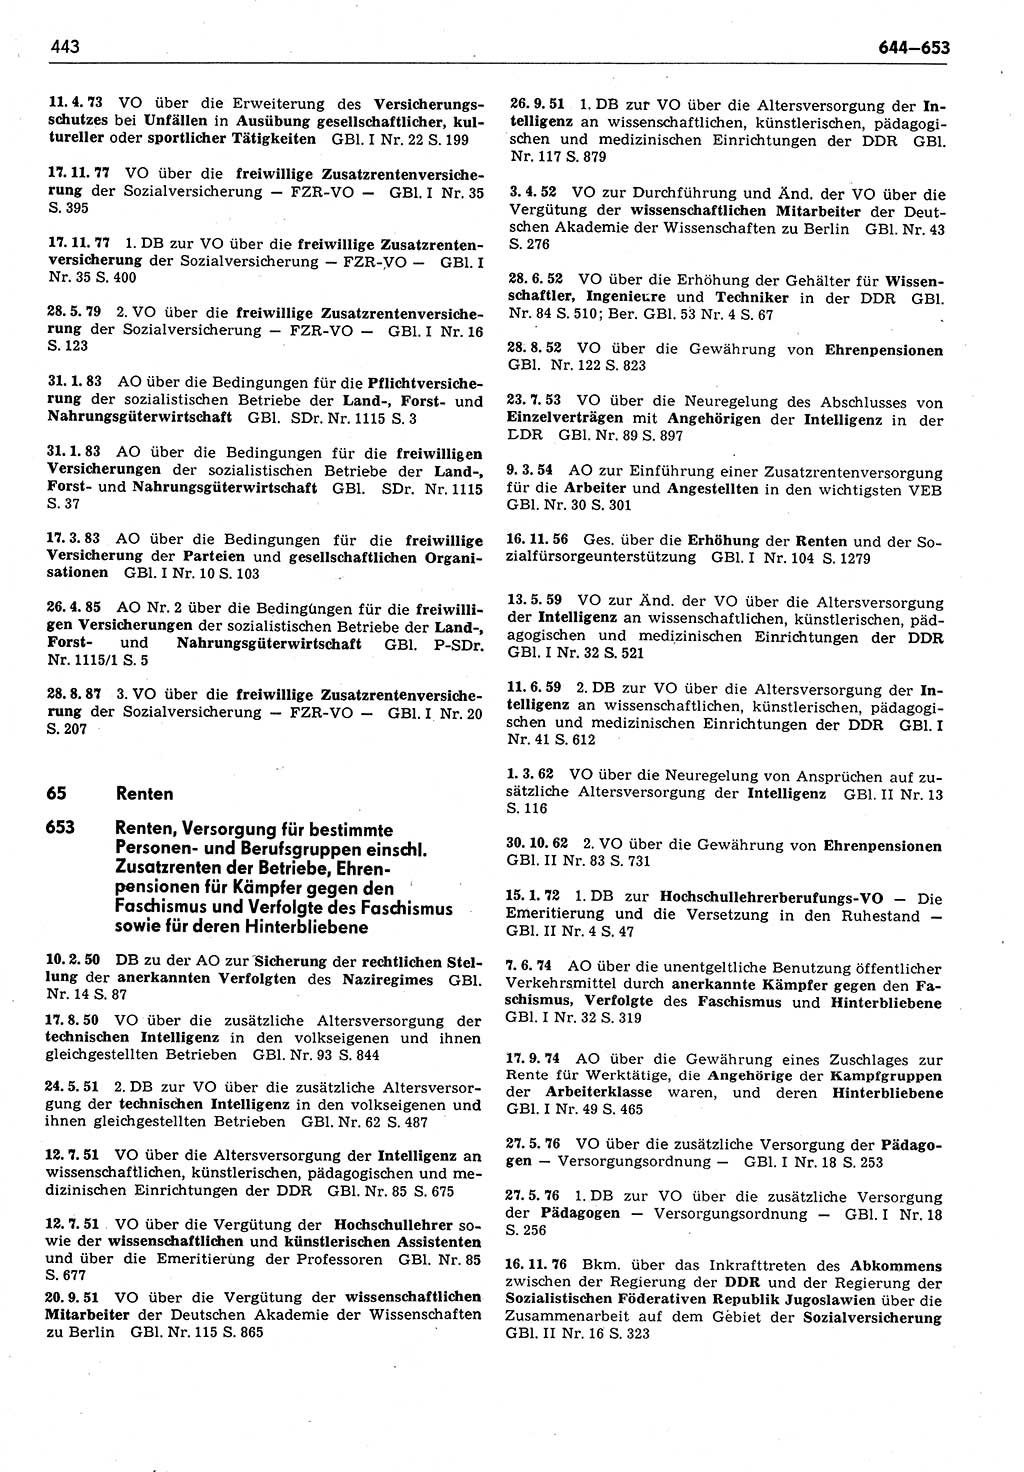 Das geltende Recht der Deutschen Demokratischen Republik (DDR) 1949-1988, Seite 443 (Gelt. R. DDR 1949-1988, S. 443)